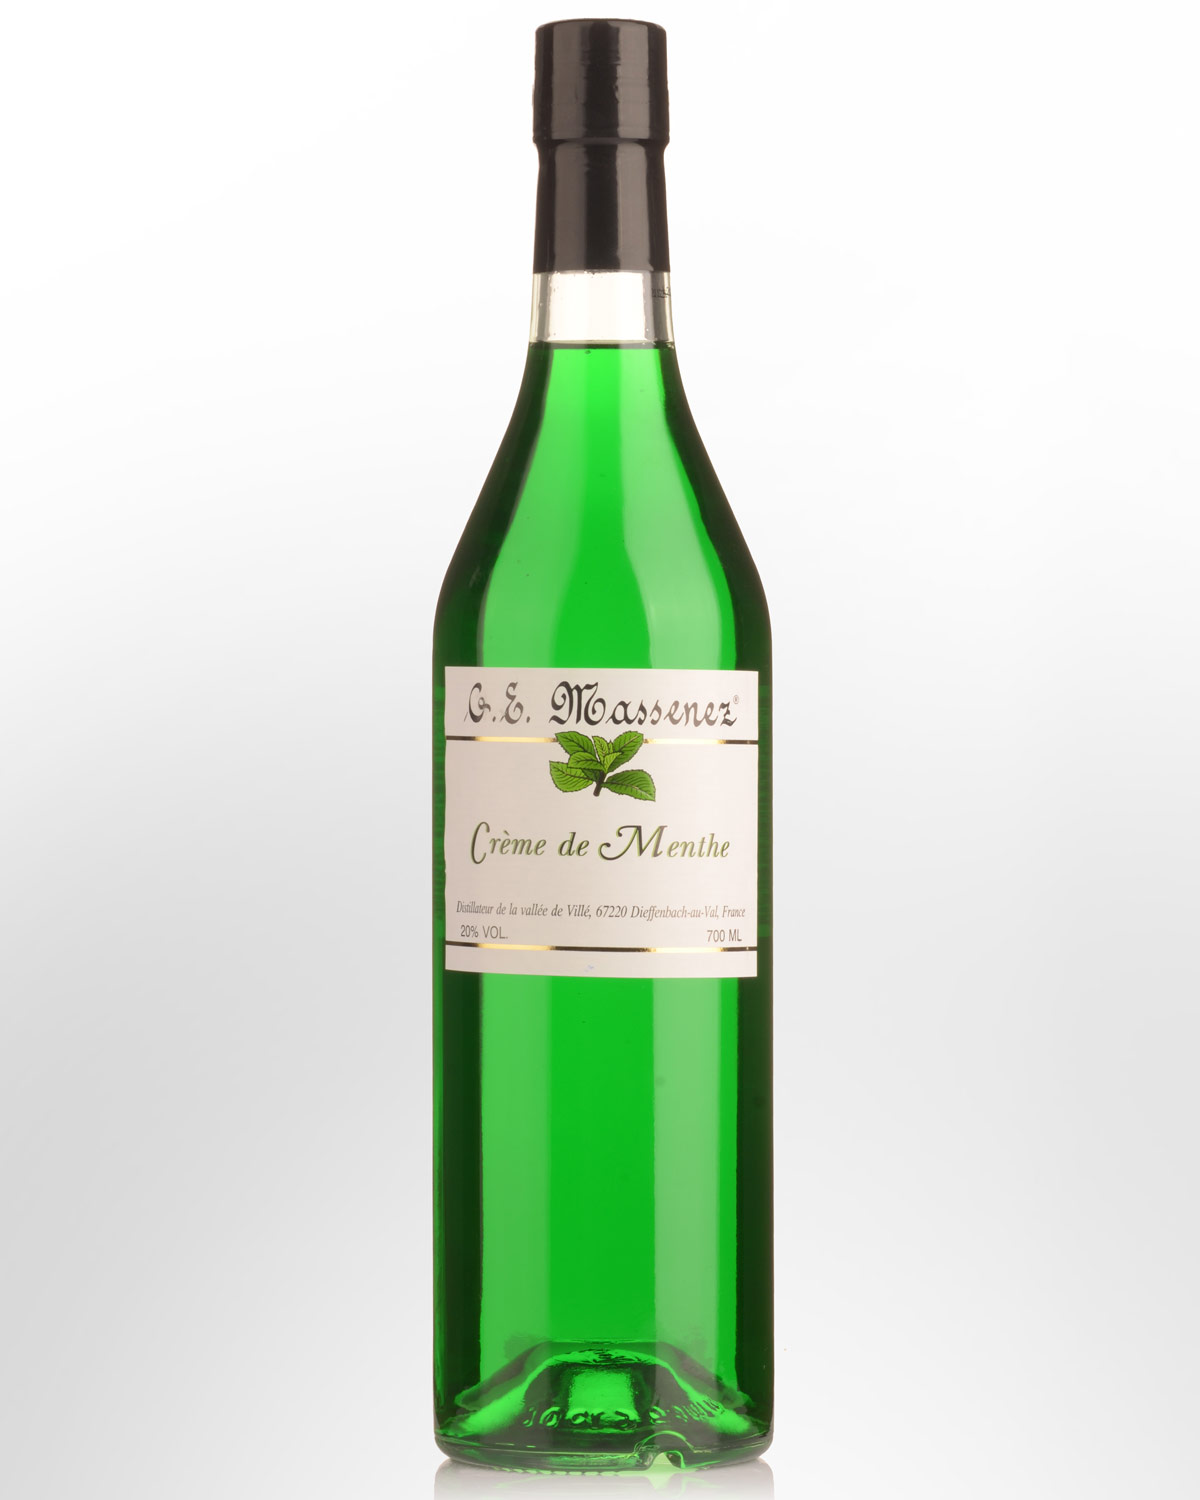 G.E. Massenez Liqueur de Menthe Verte (Green Mint) Liqueur (700ml)